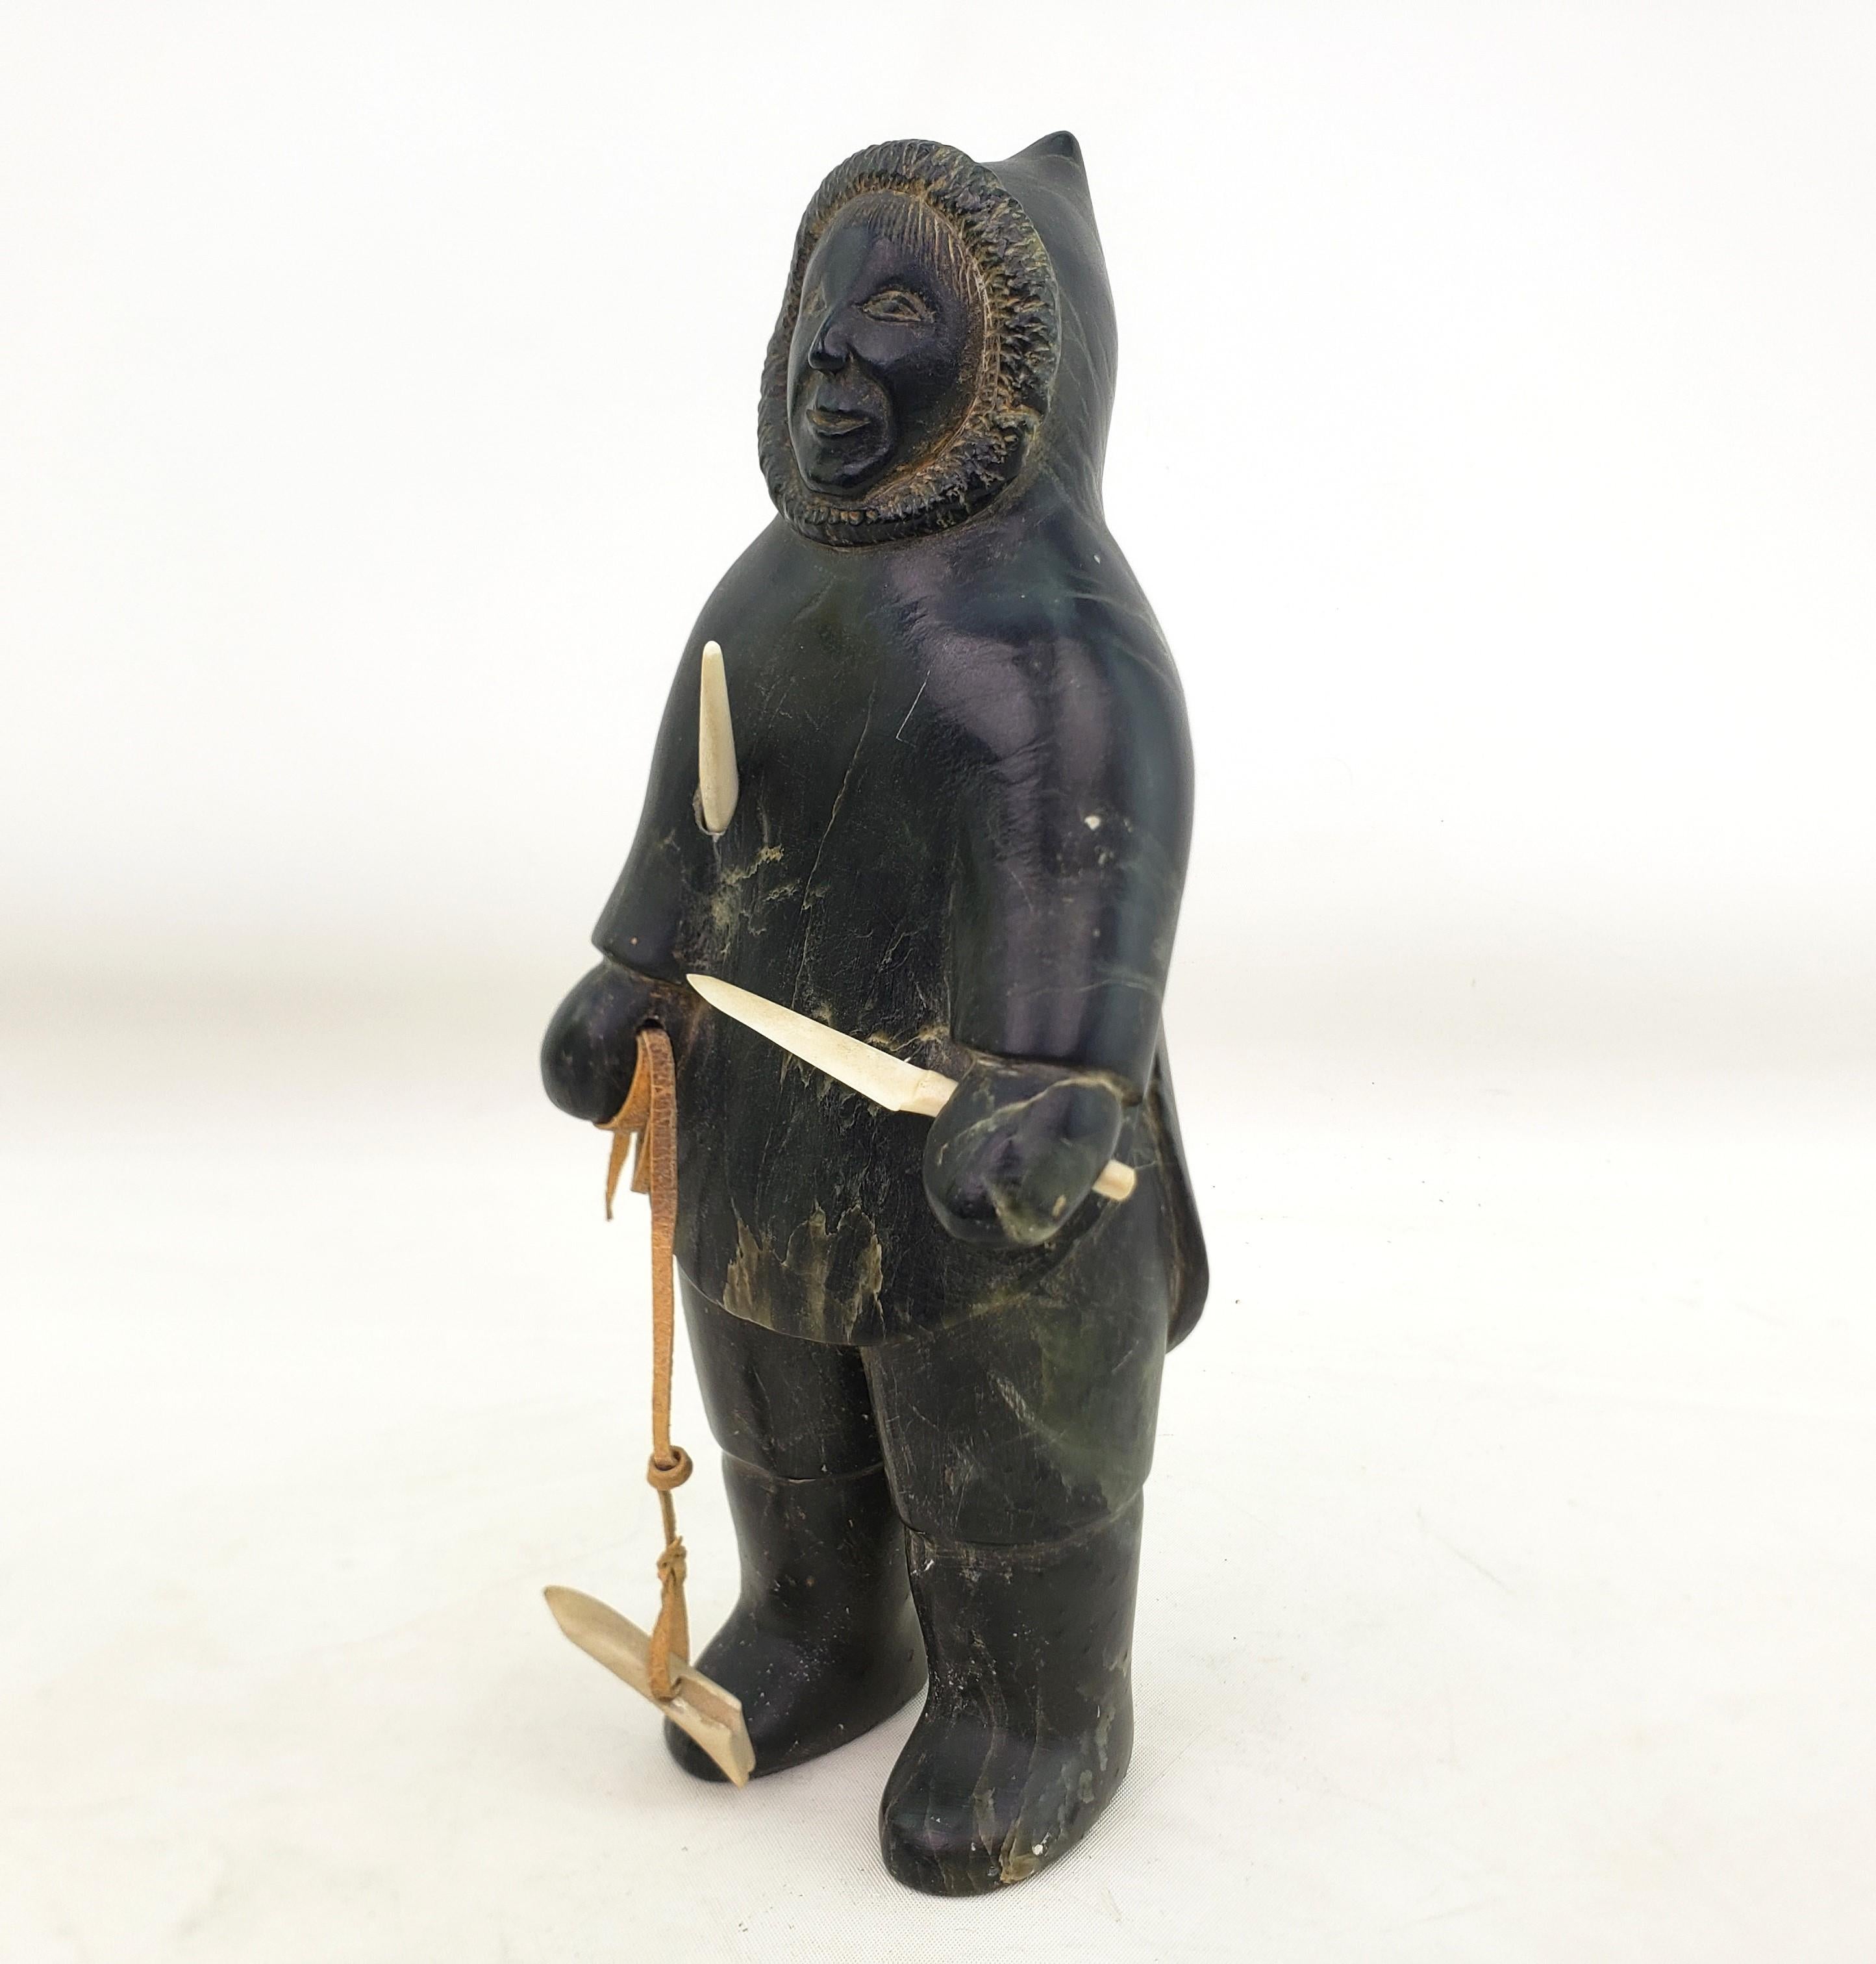 Diese gut ausgeführte Skulptur ist von einem unbekannten Künstler signiert und stammt aus Kanada. Sie wurde um 1960 im Inuit-Stil der Jahrhundertmitte geschaffen. Die Skulptur besteht aus Speckstein und stellt einen Inuit-Jäger mit Speer und Messer